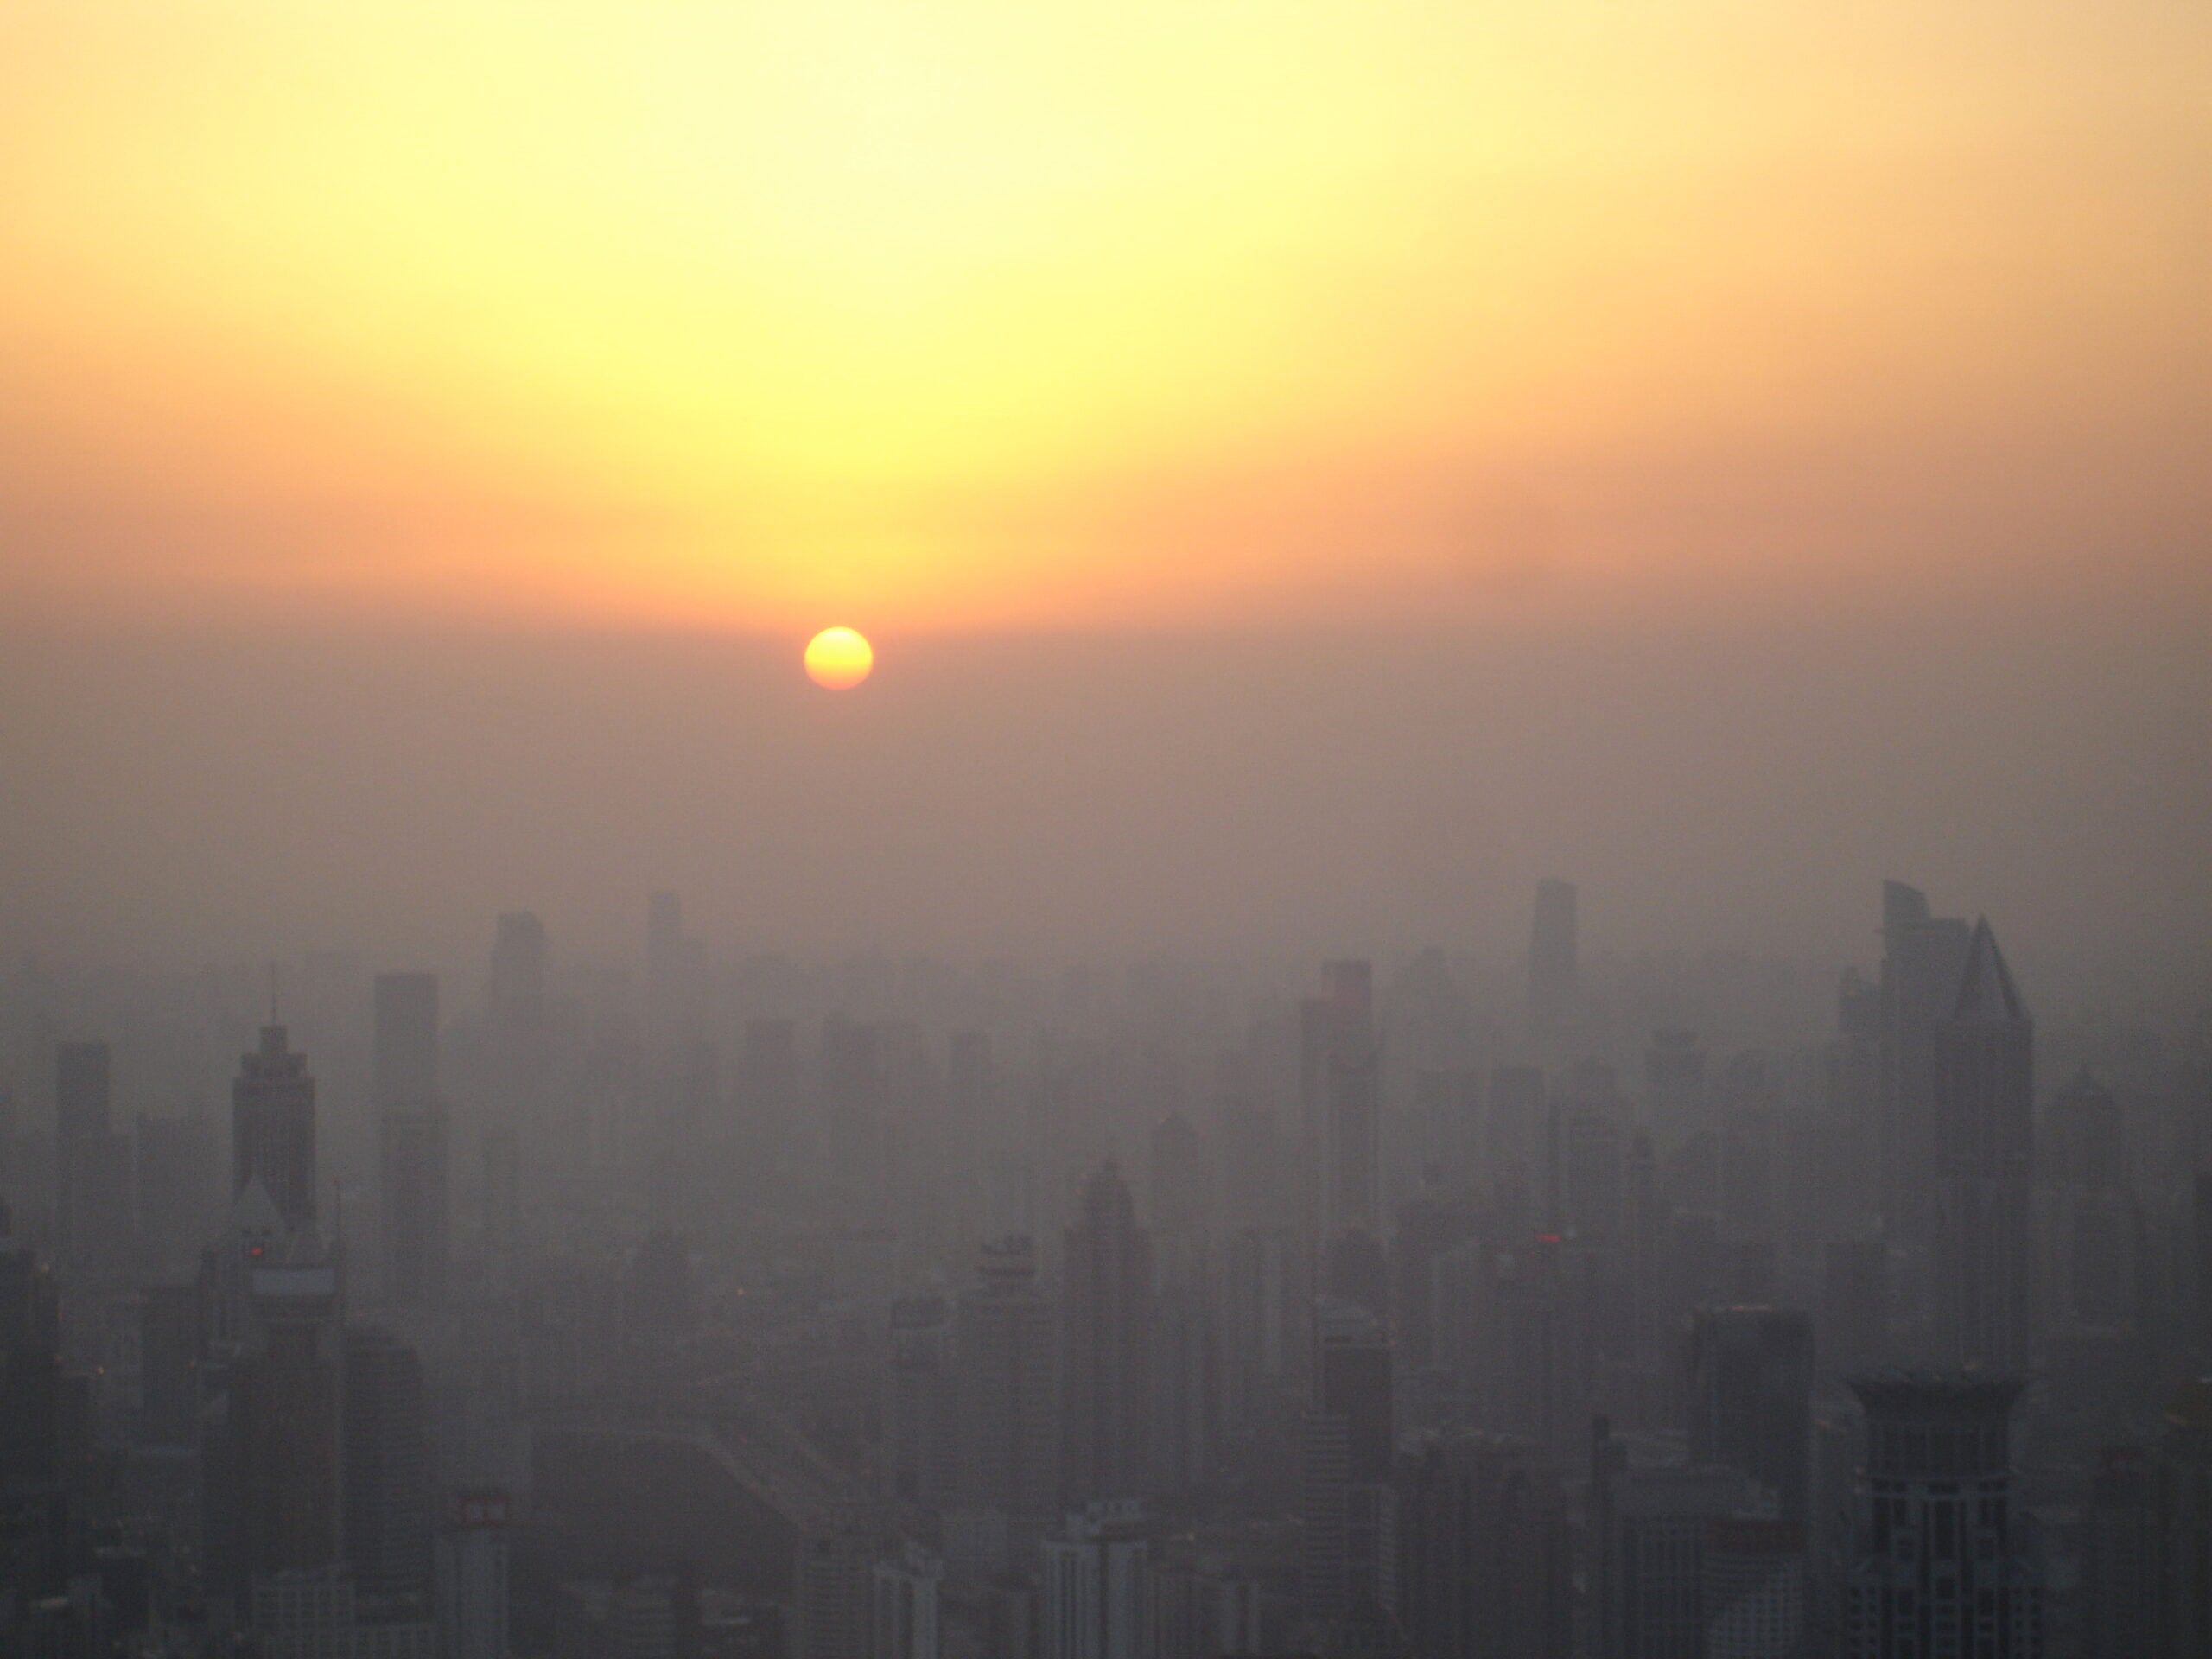 shanghai smog